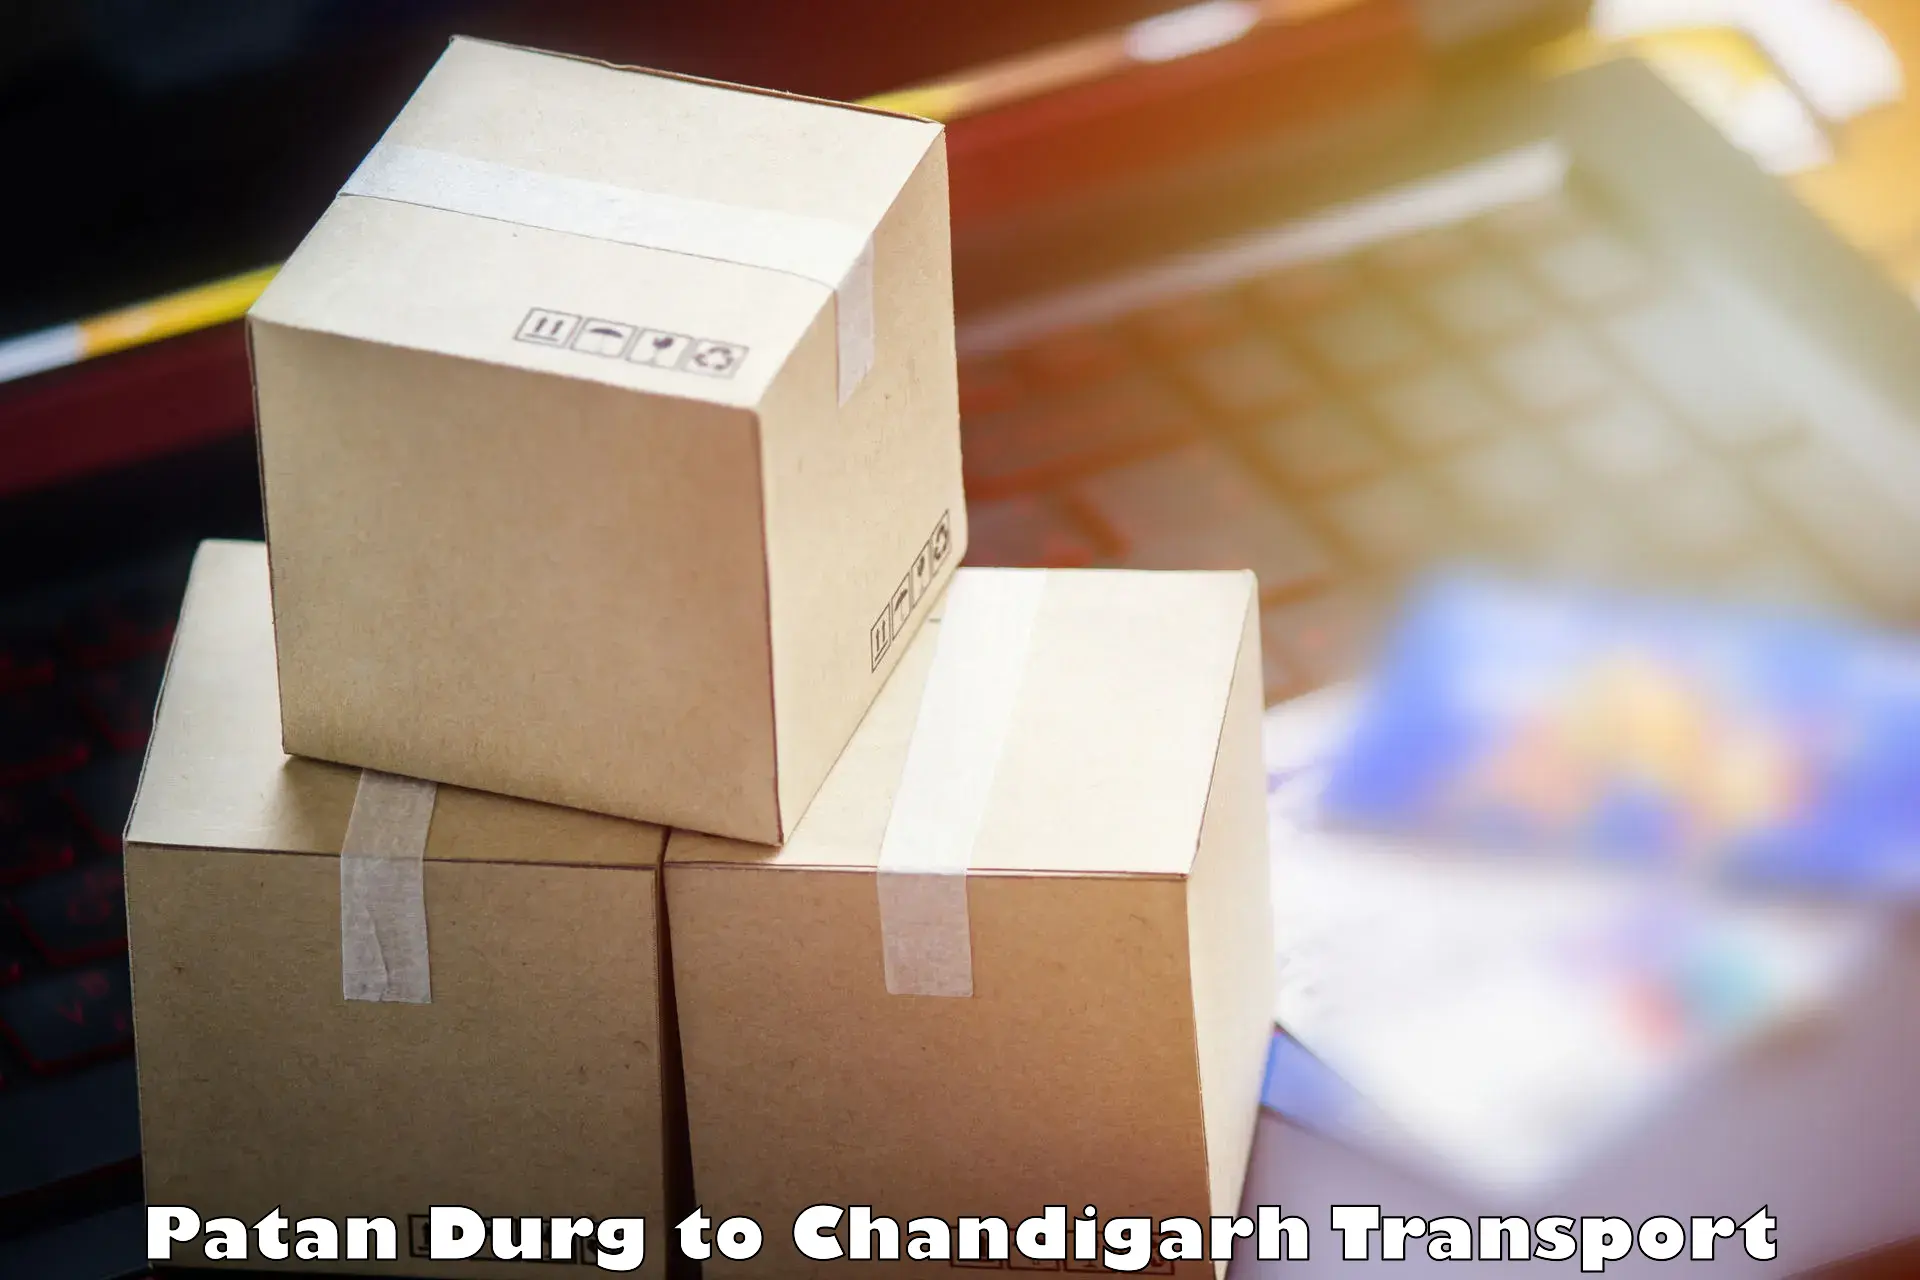 Interstate transport services Patan Durg to Chandigarh